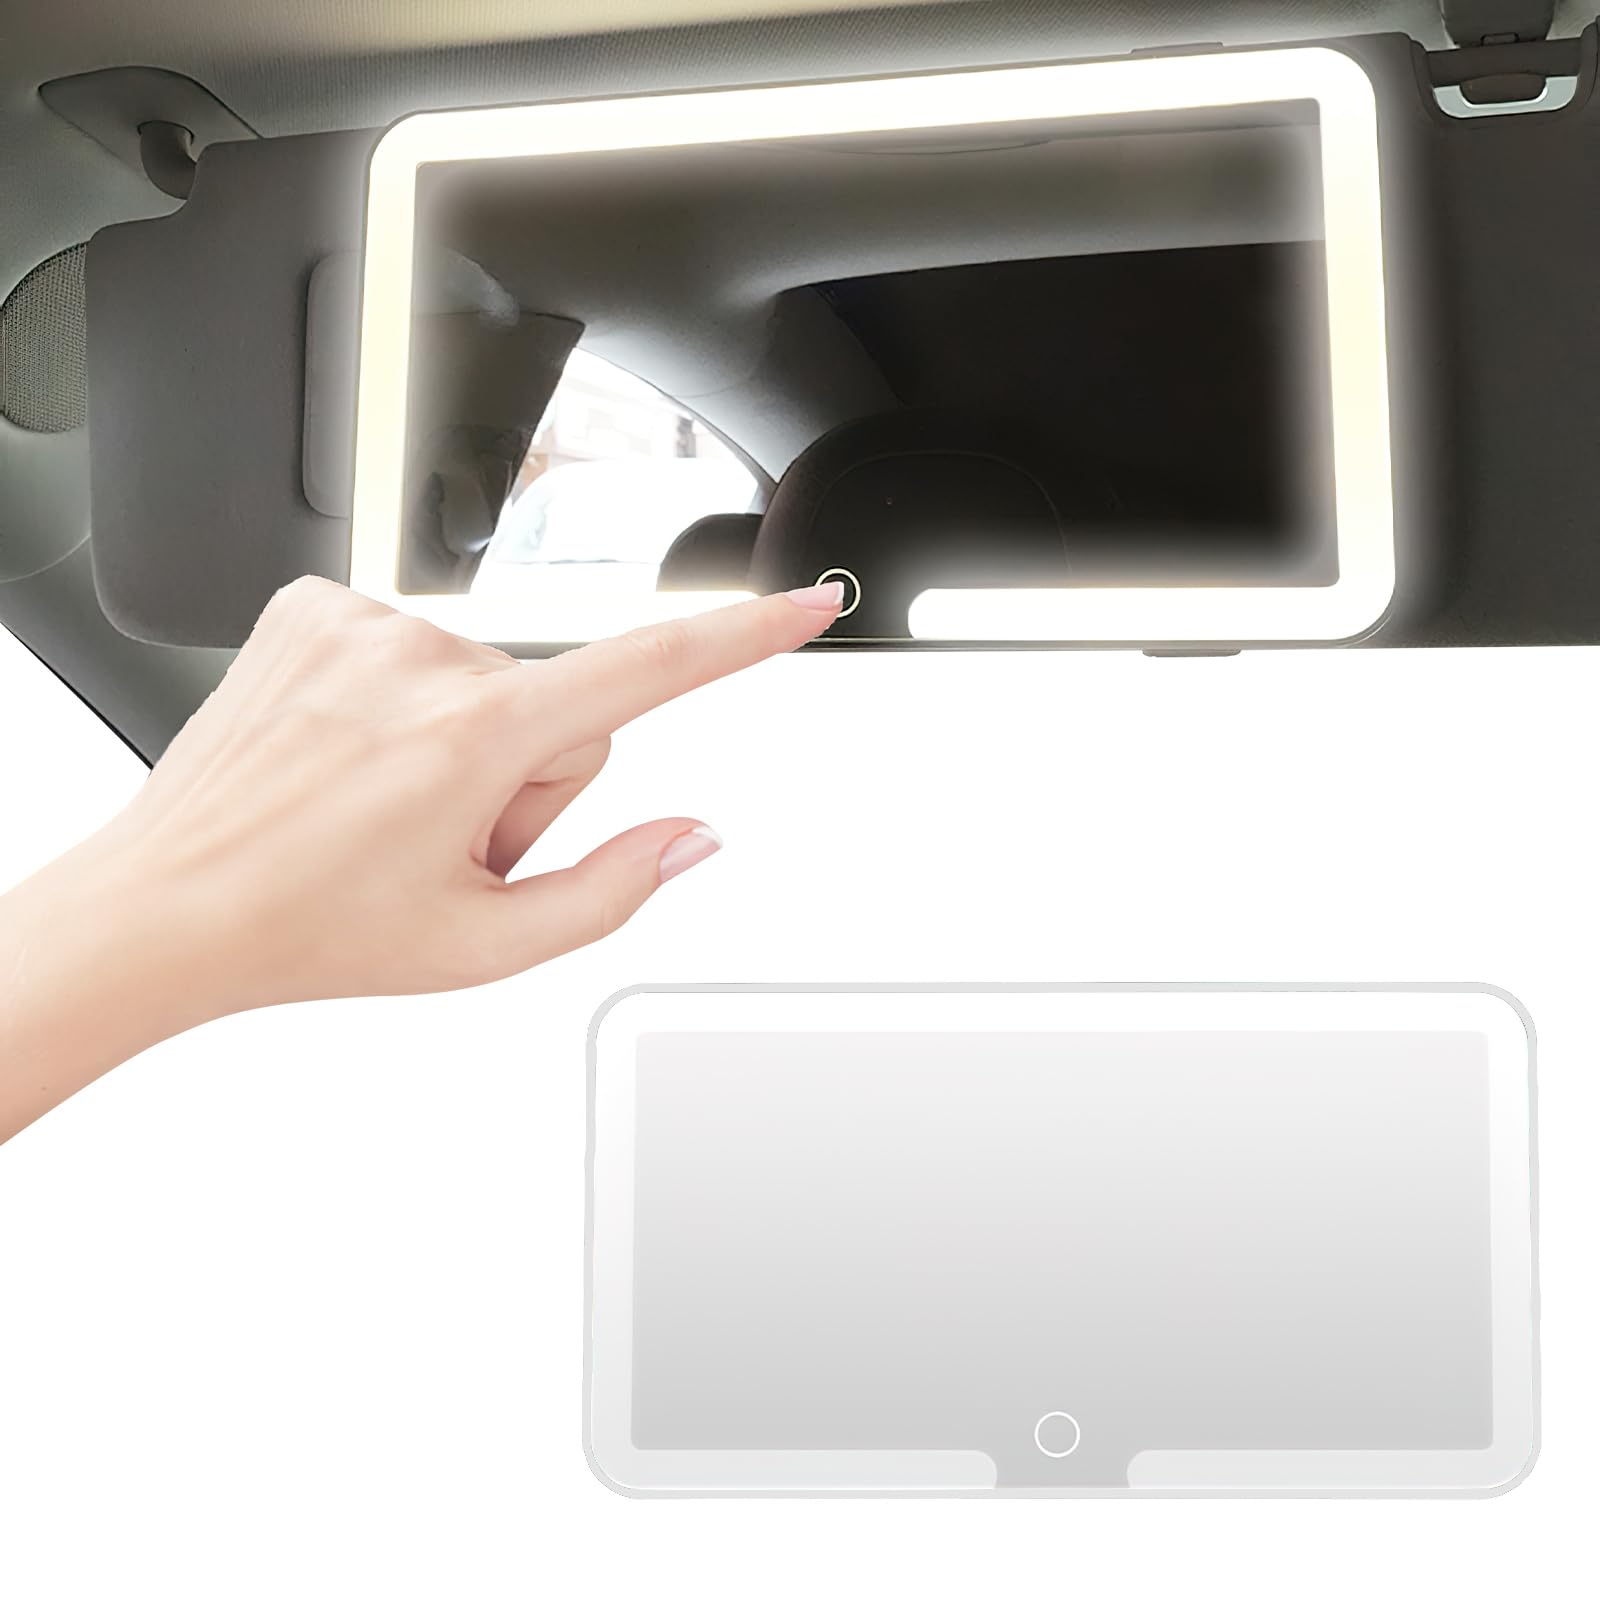 Auto LED Kosmetikspiegel Sonnenblende Spiegel, Universal Schminkspiegel mit Licht, 3 Lichtmodi Auto-Sonnenblende Kosmetikspiegel Deko, Beleuchteter Spiegel USB Aufladbar Autospiegel Beleuchtung von HENGBIRD